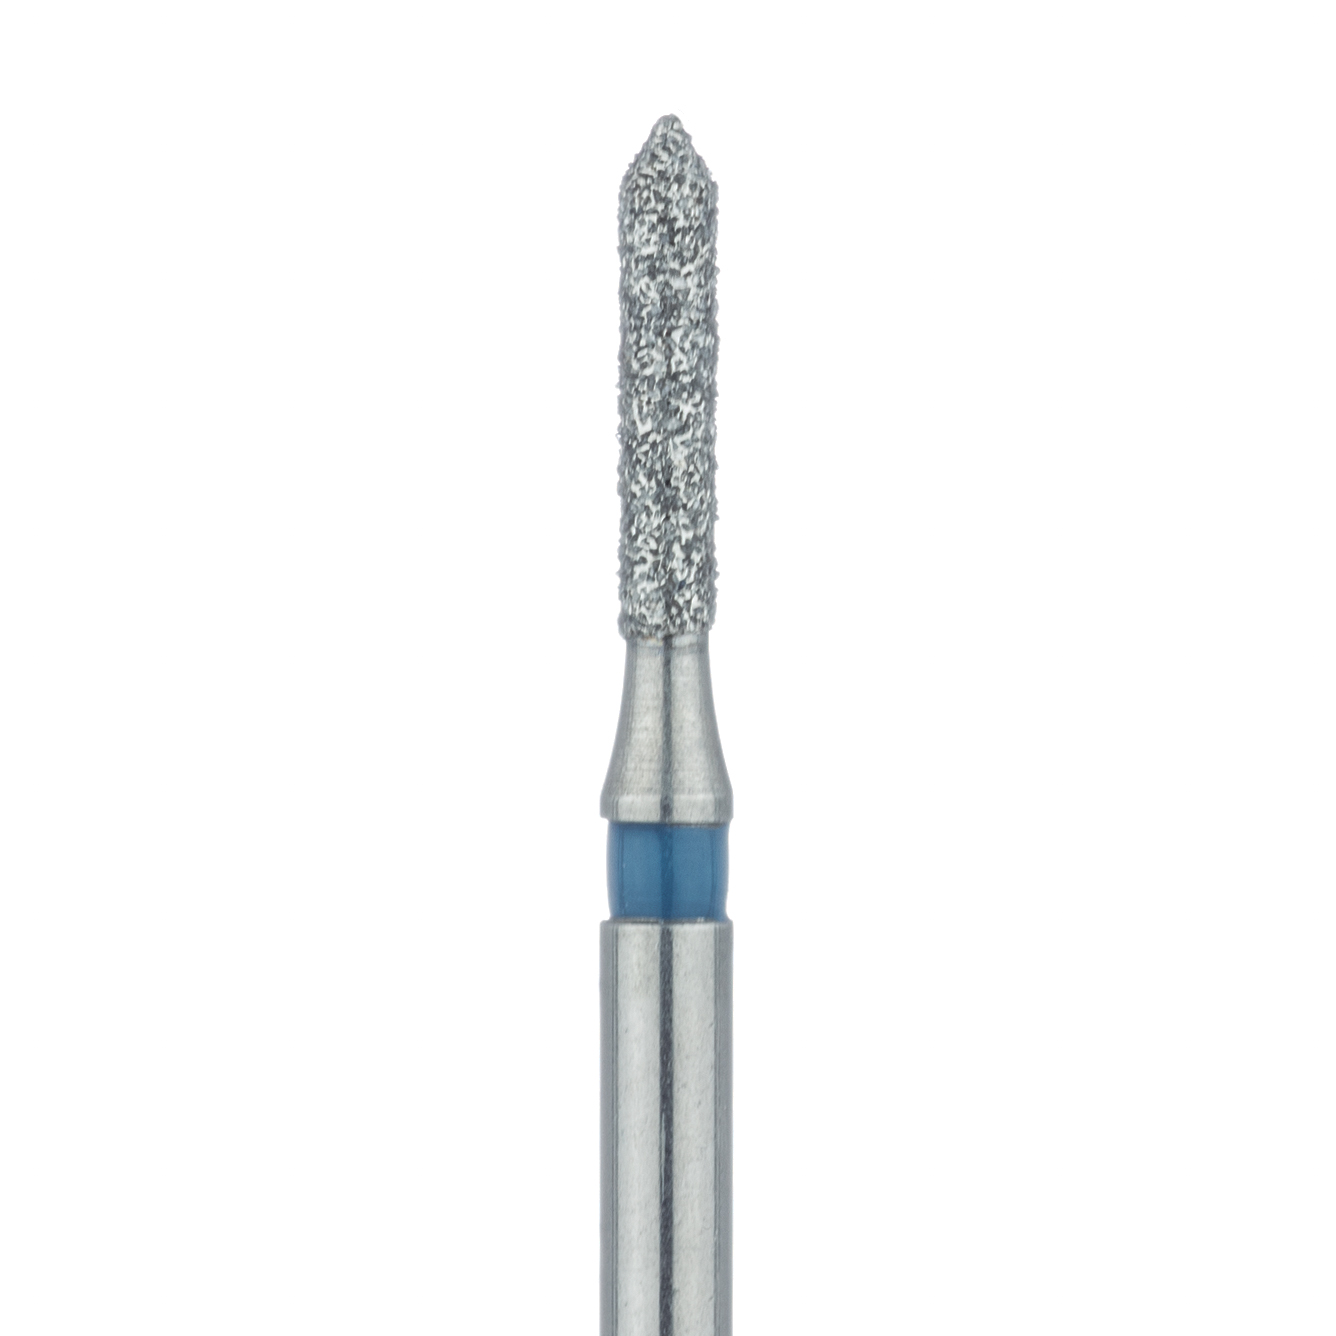 884-012-FG Medium Pointed Tip Cylinder Diamond Bur 1.2mm, FG